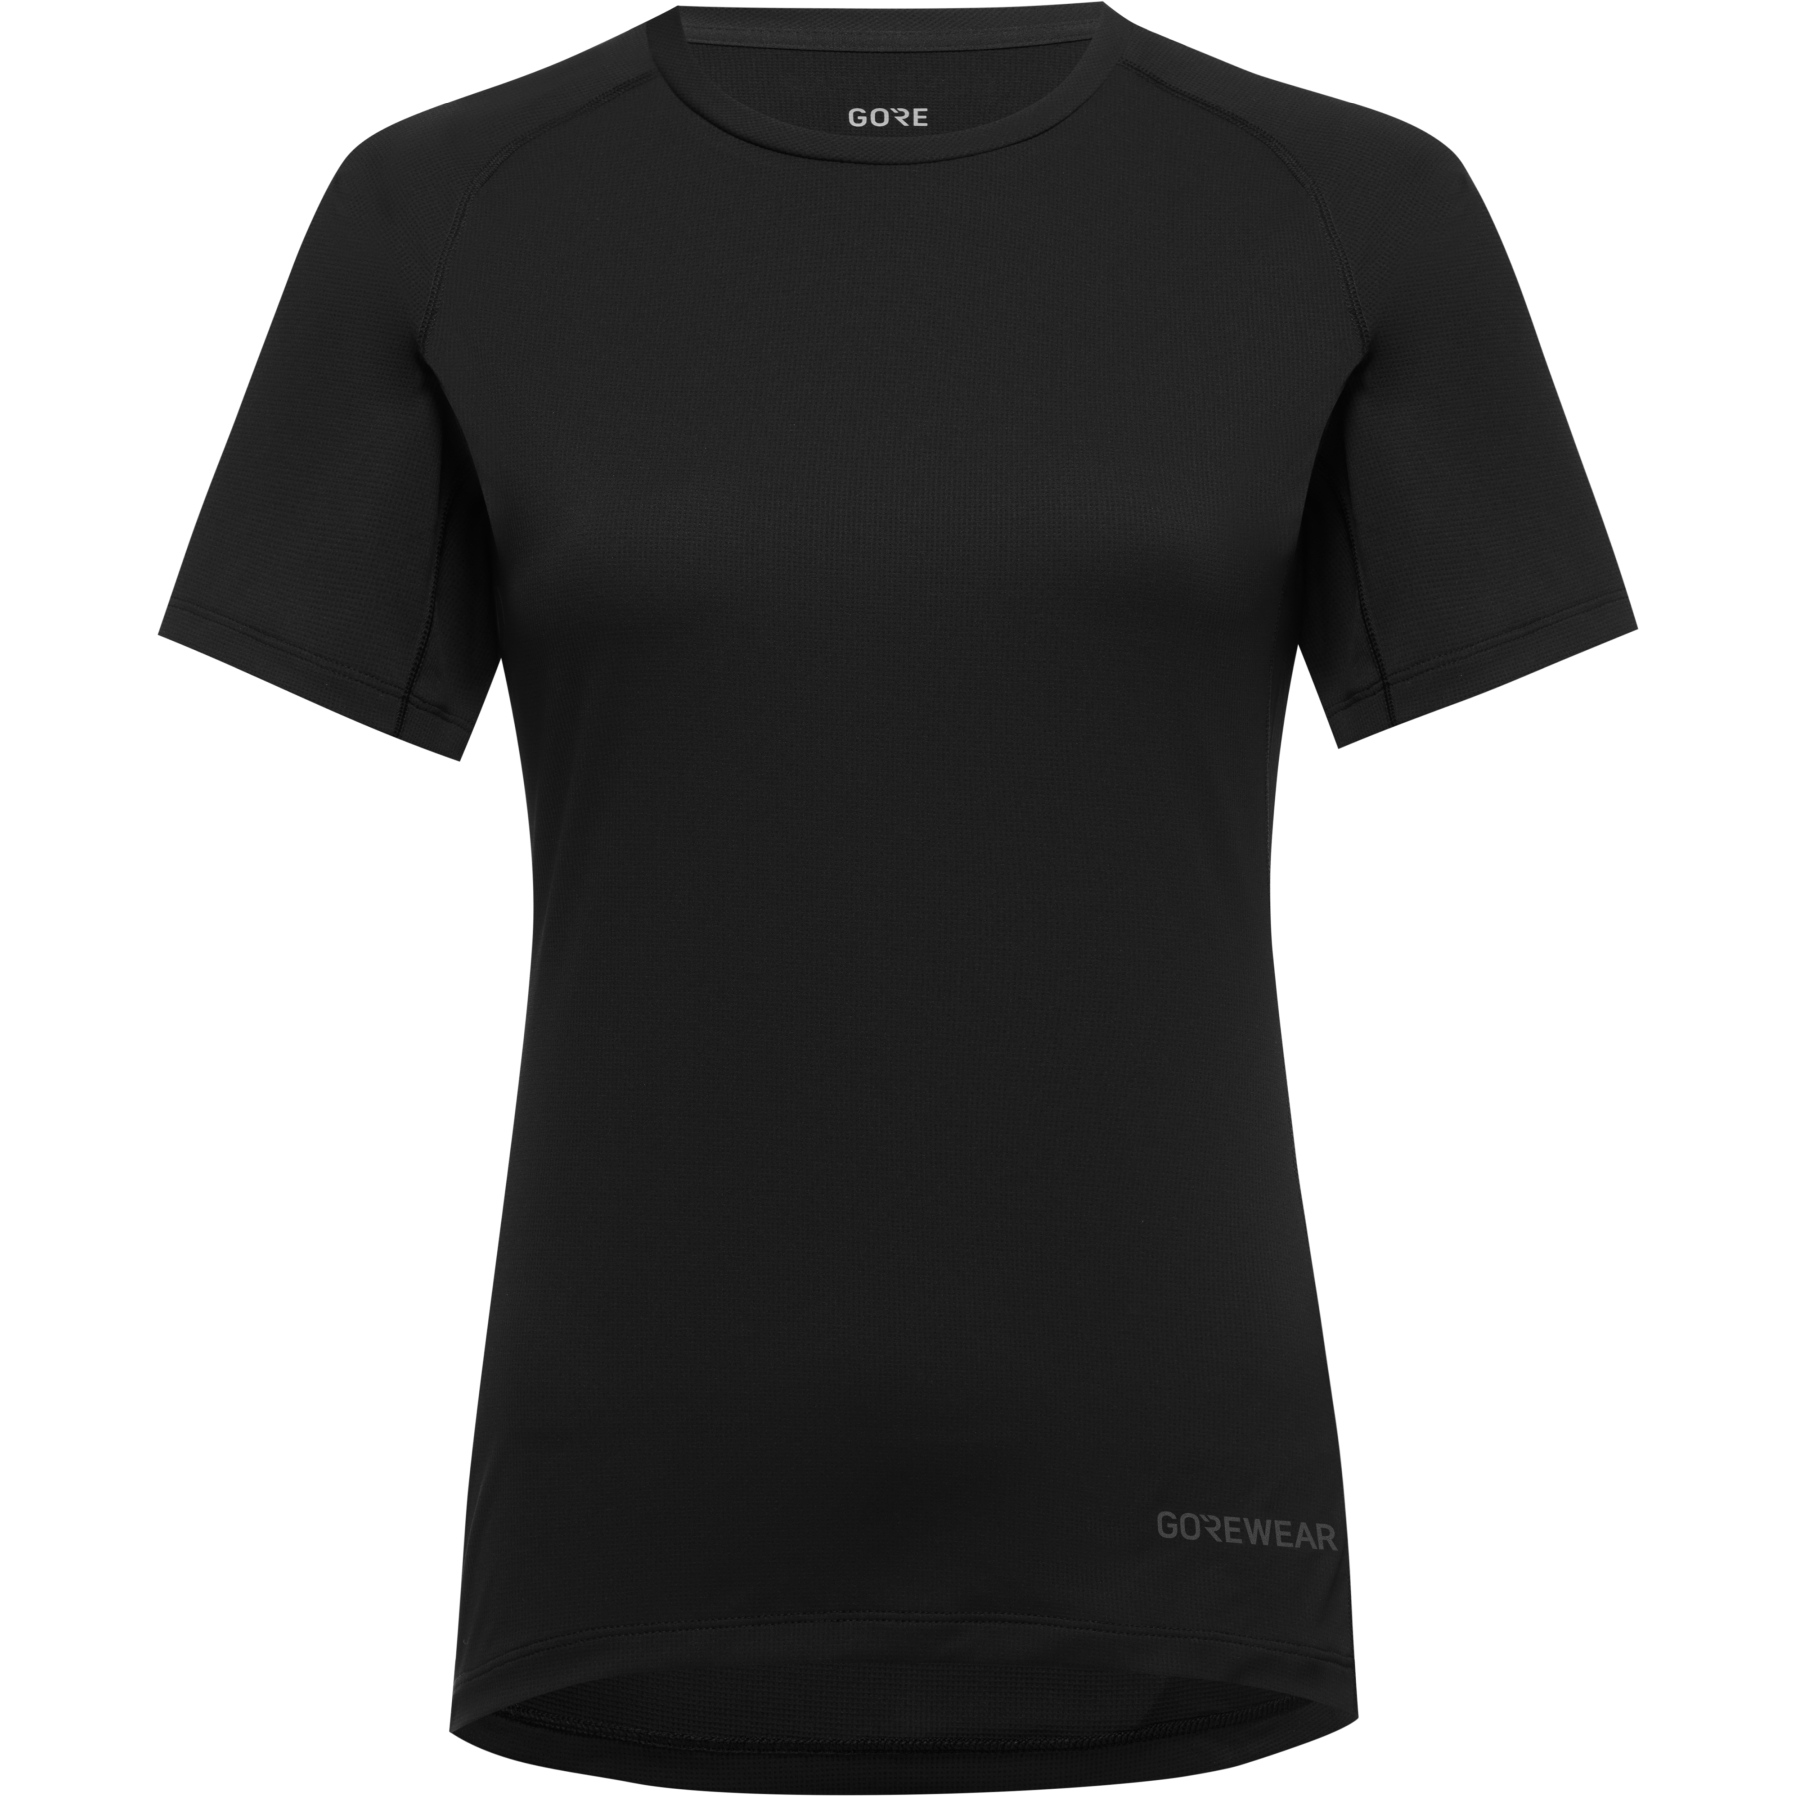 Produktbild von GOREWEAR Everyday T-Shirt Damen - schwarz 9900